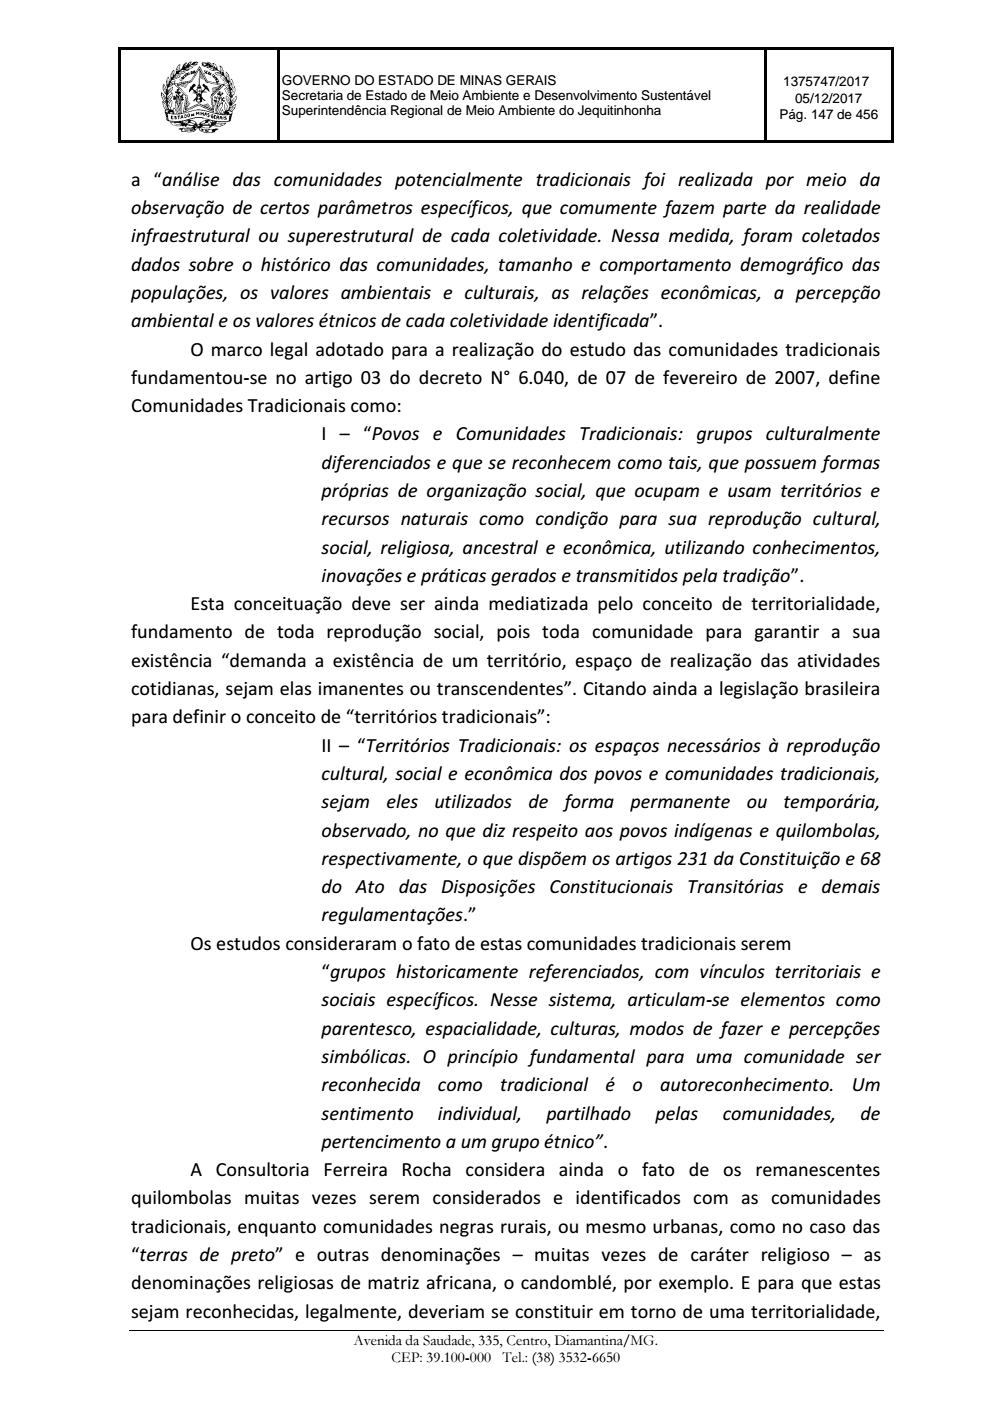 Page 147 from Parecer único da Secretaria de estado de Meio Ambiente e Desenvolvimento Sustentável (SEMAD)